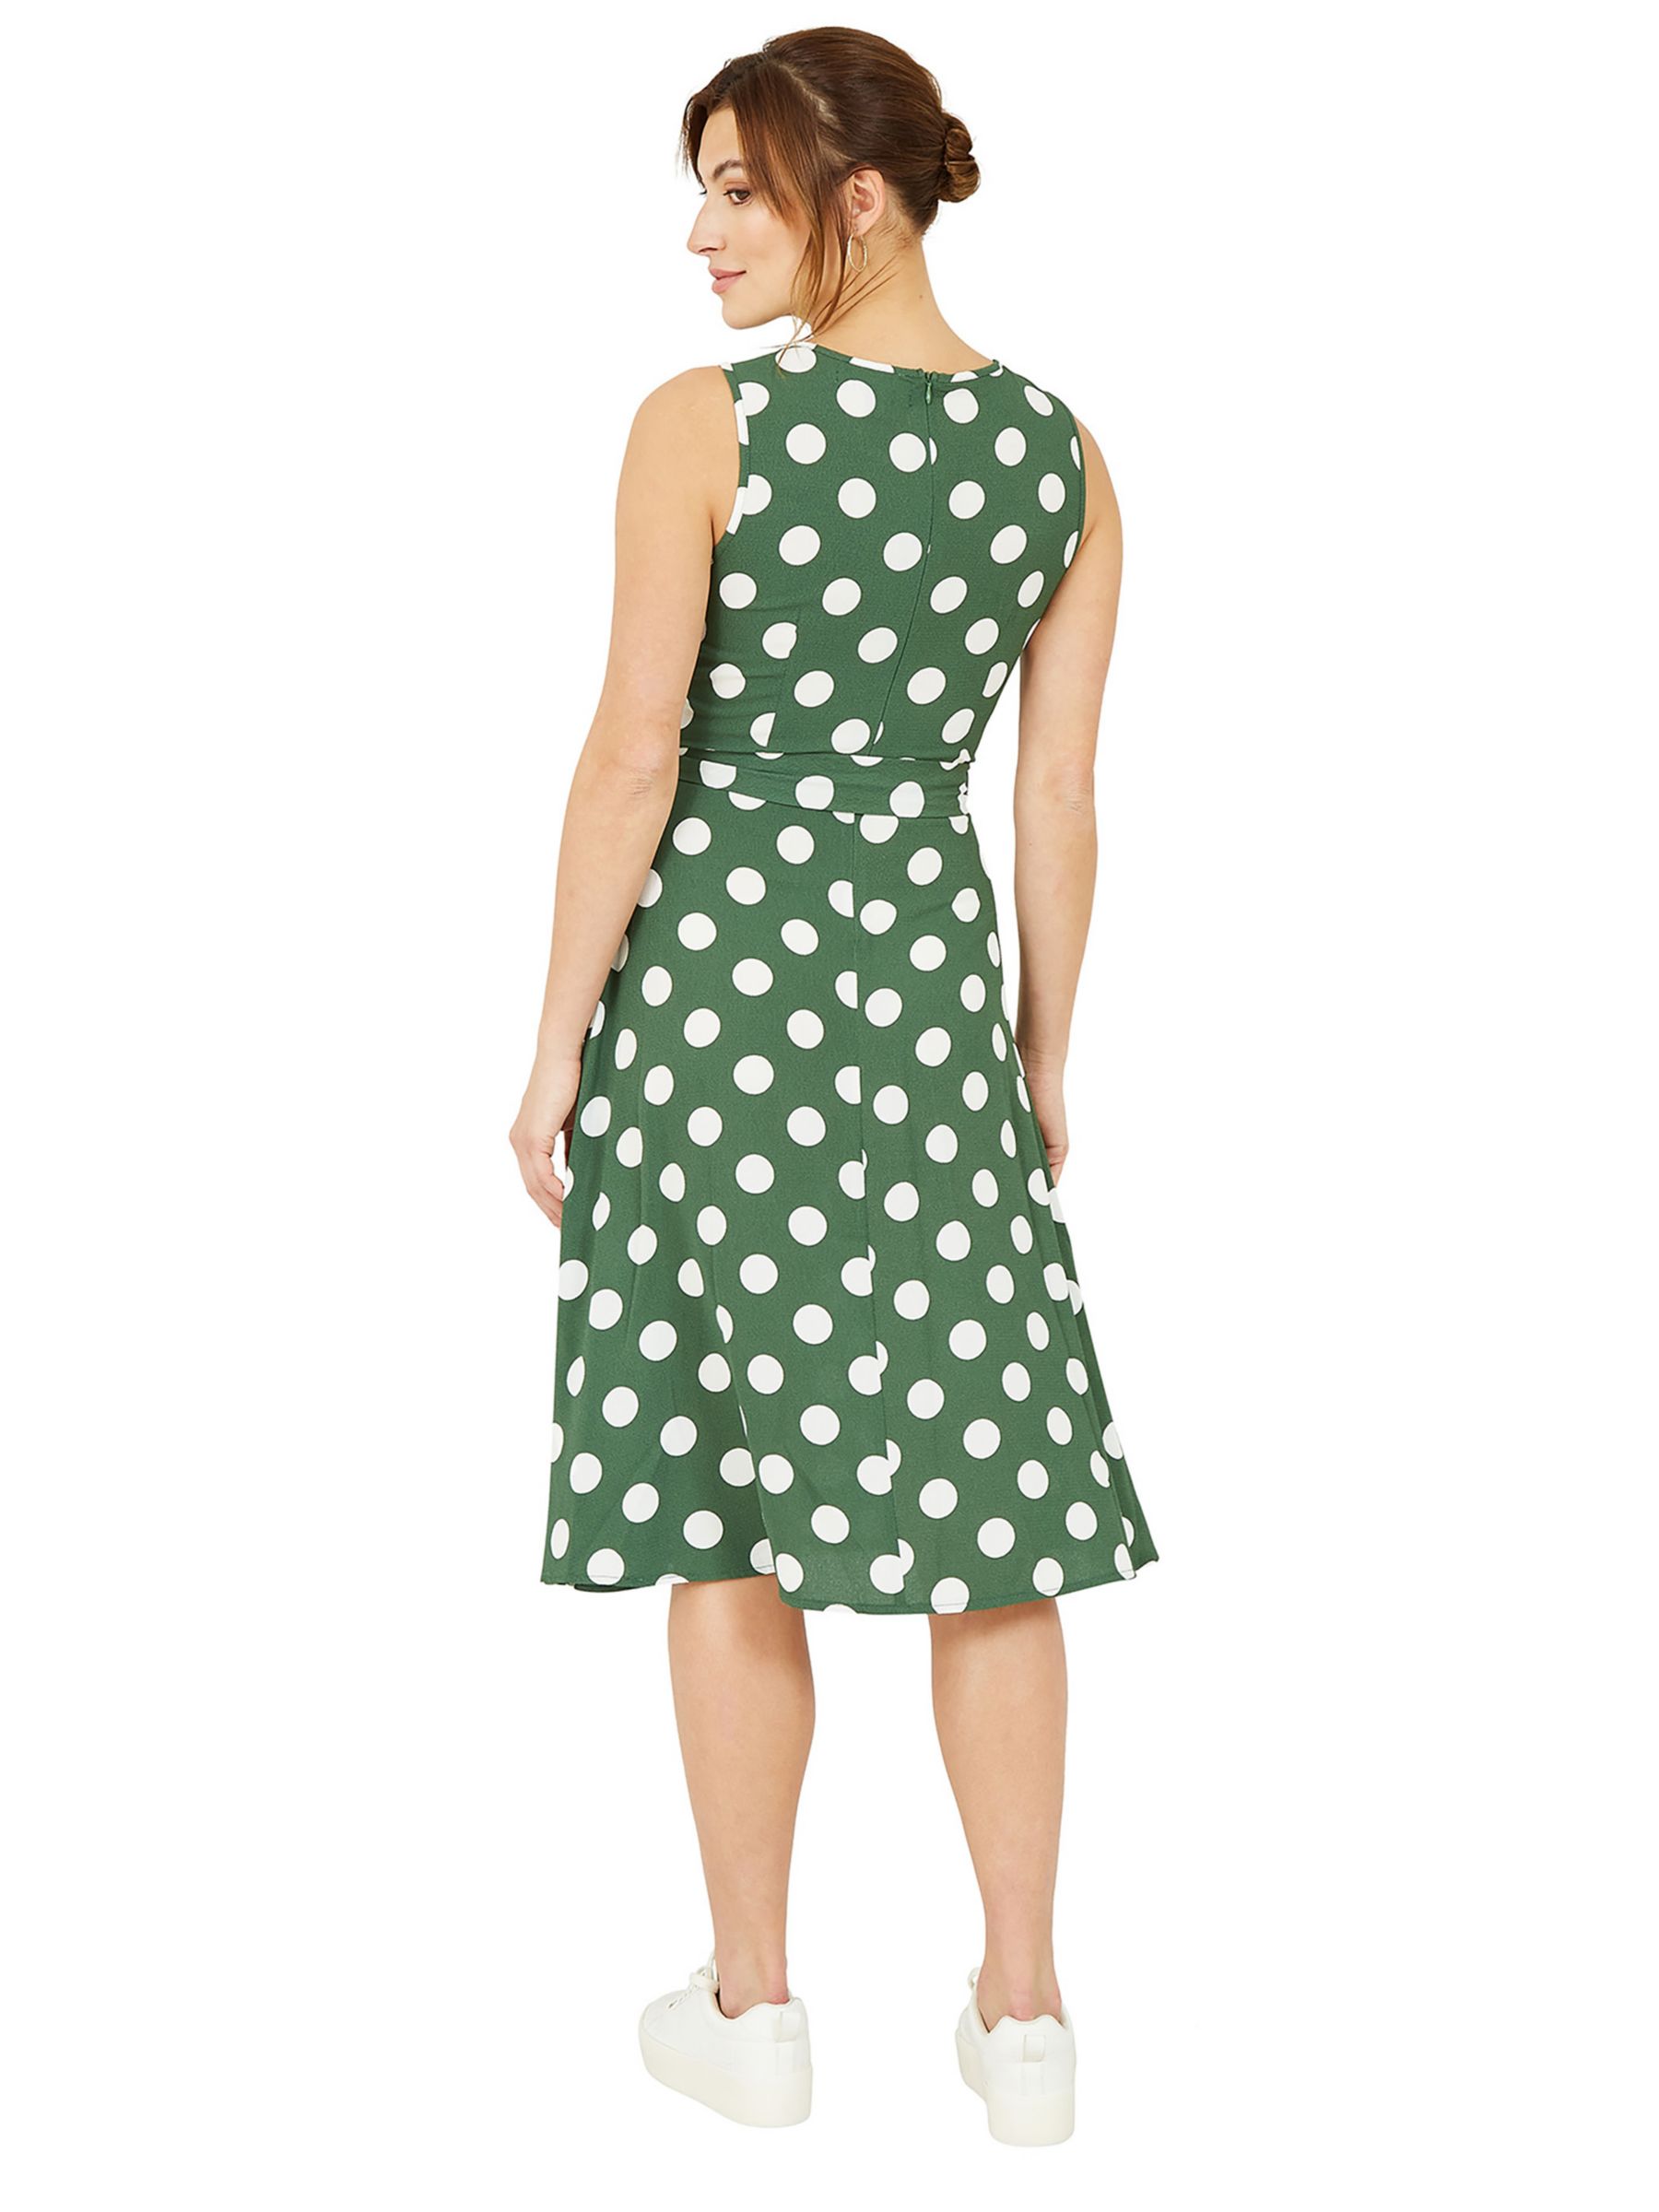 Buy Mela London Polka Dot Sleeveless Skater Midi Dress, Dark Green/Multi Online at johnlewis.com